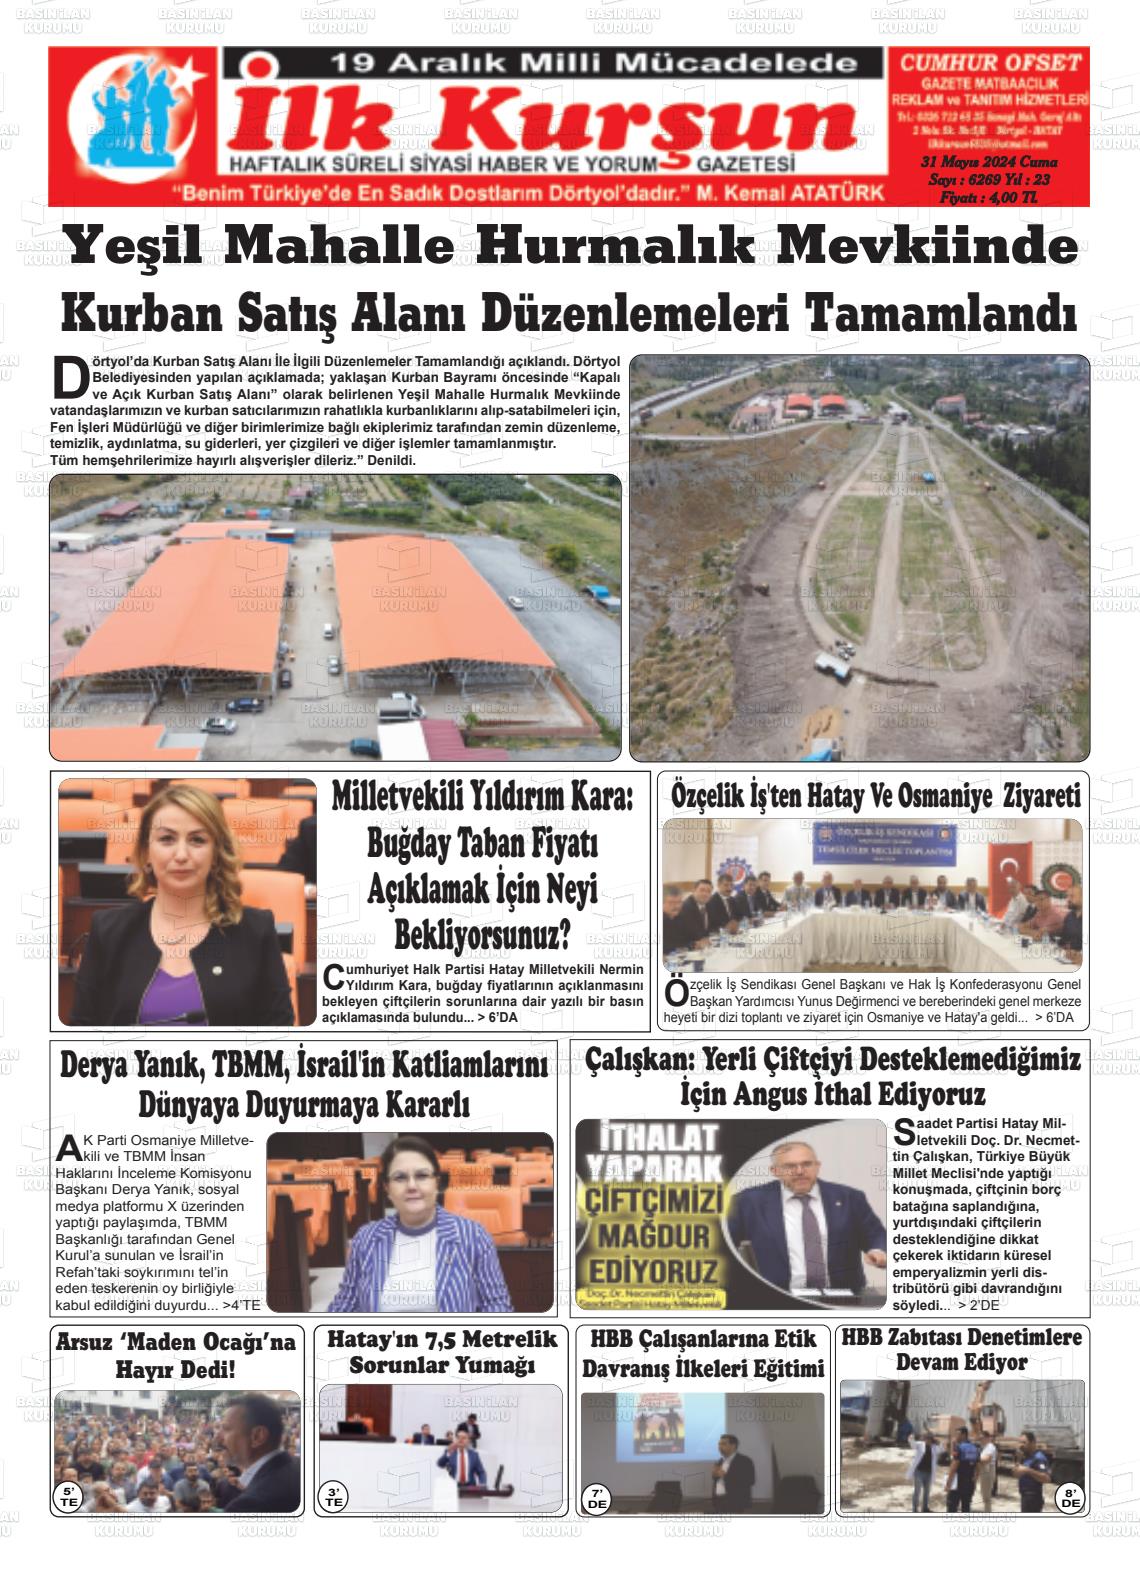 İLK KURŞUN Gazetesi